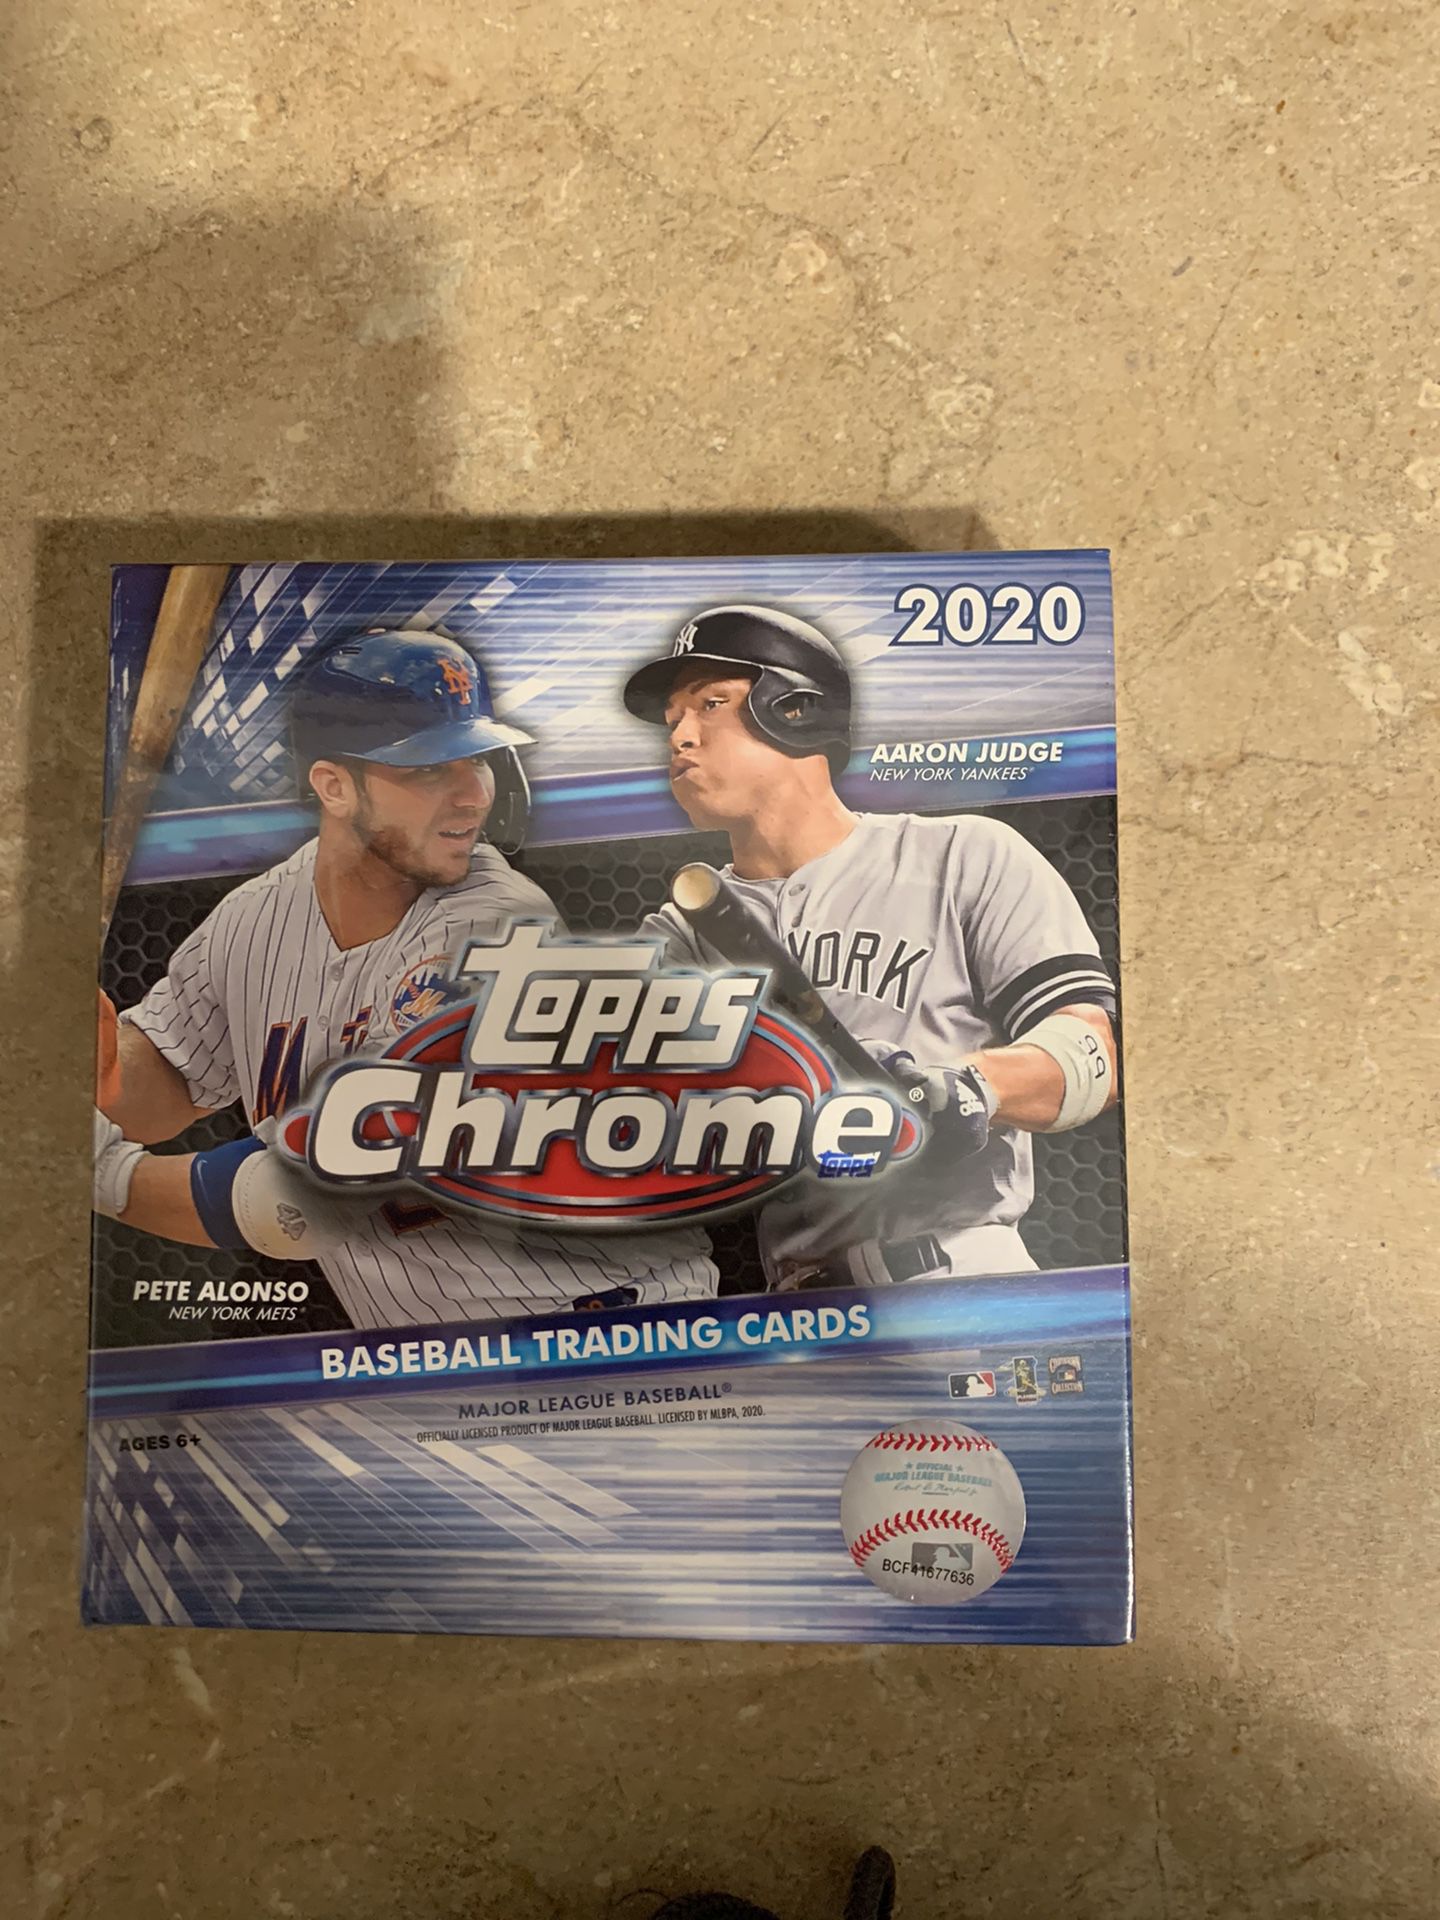 2020 Topps Chrome mega box baseball cards MLB